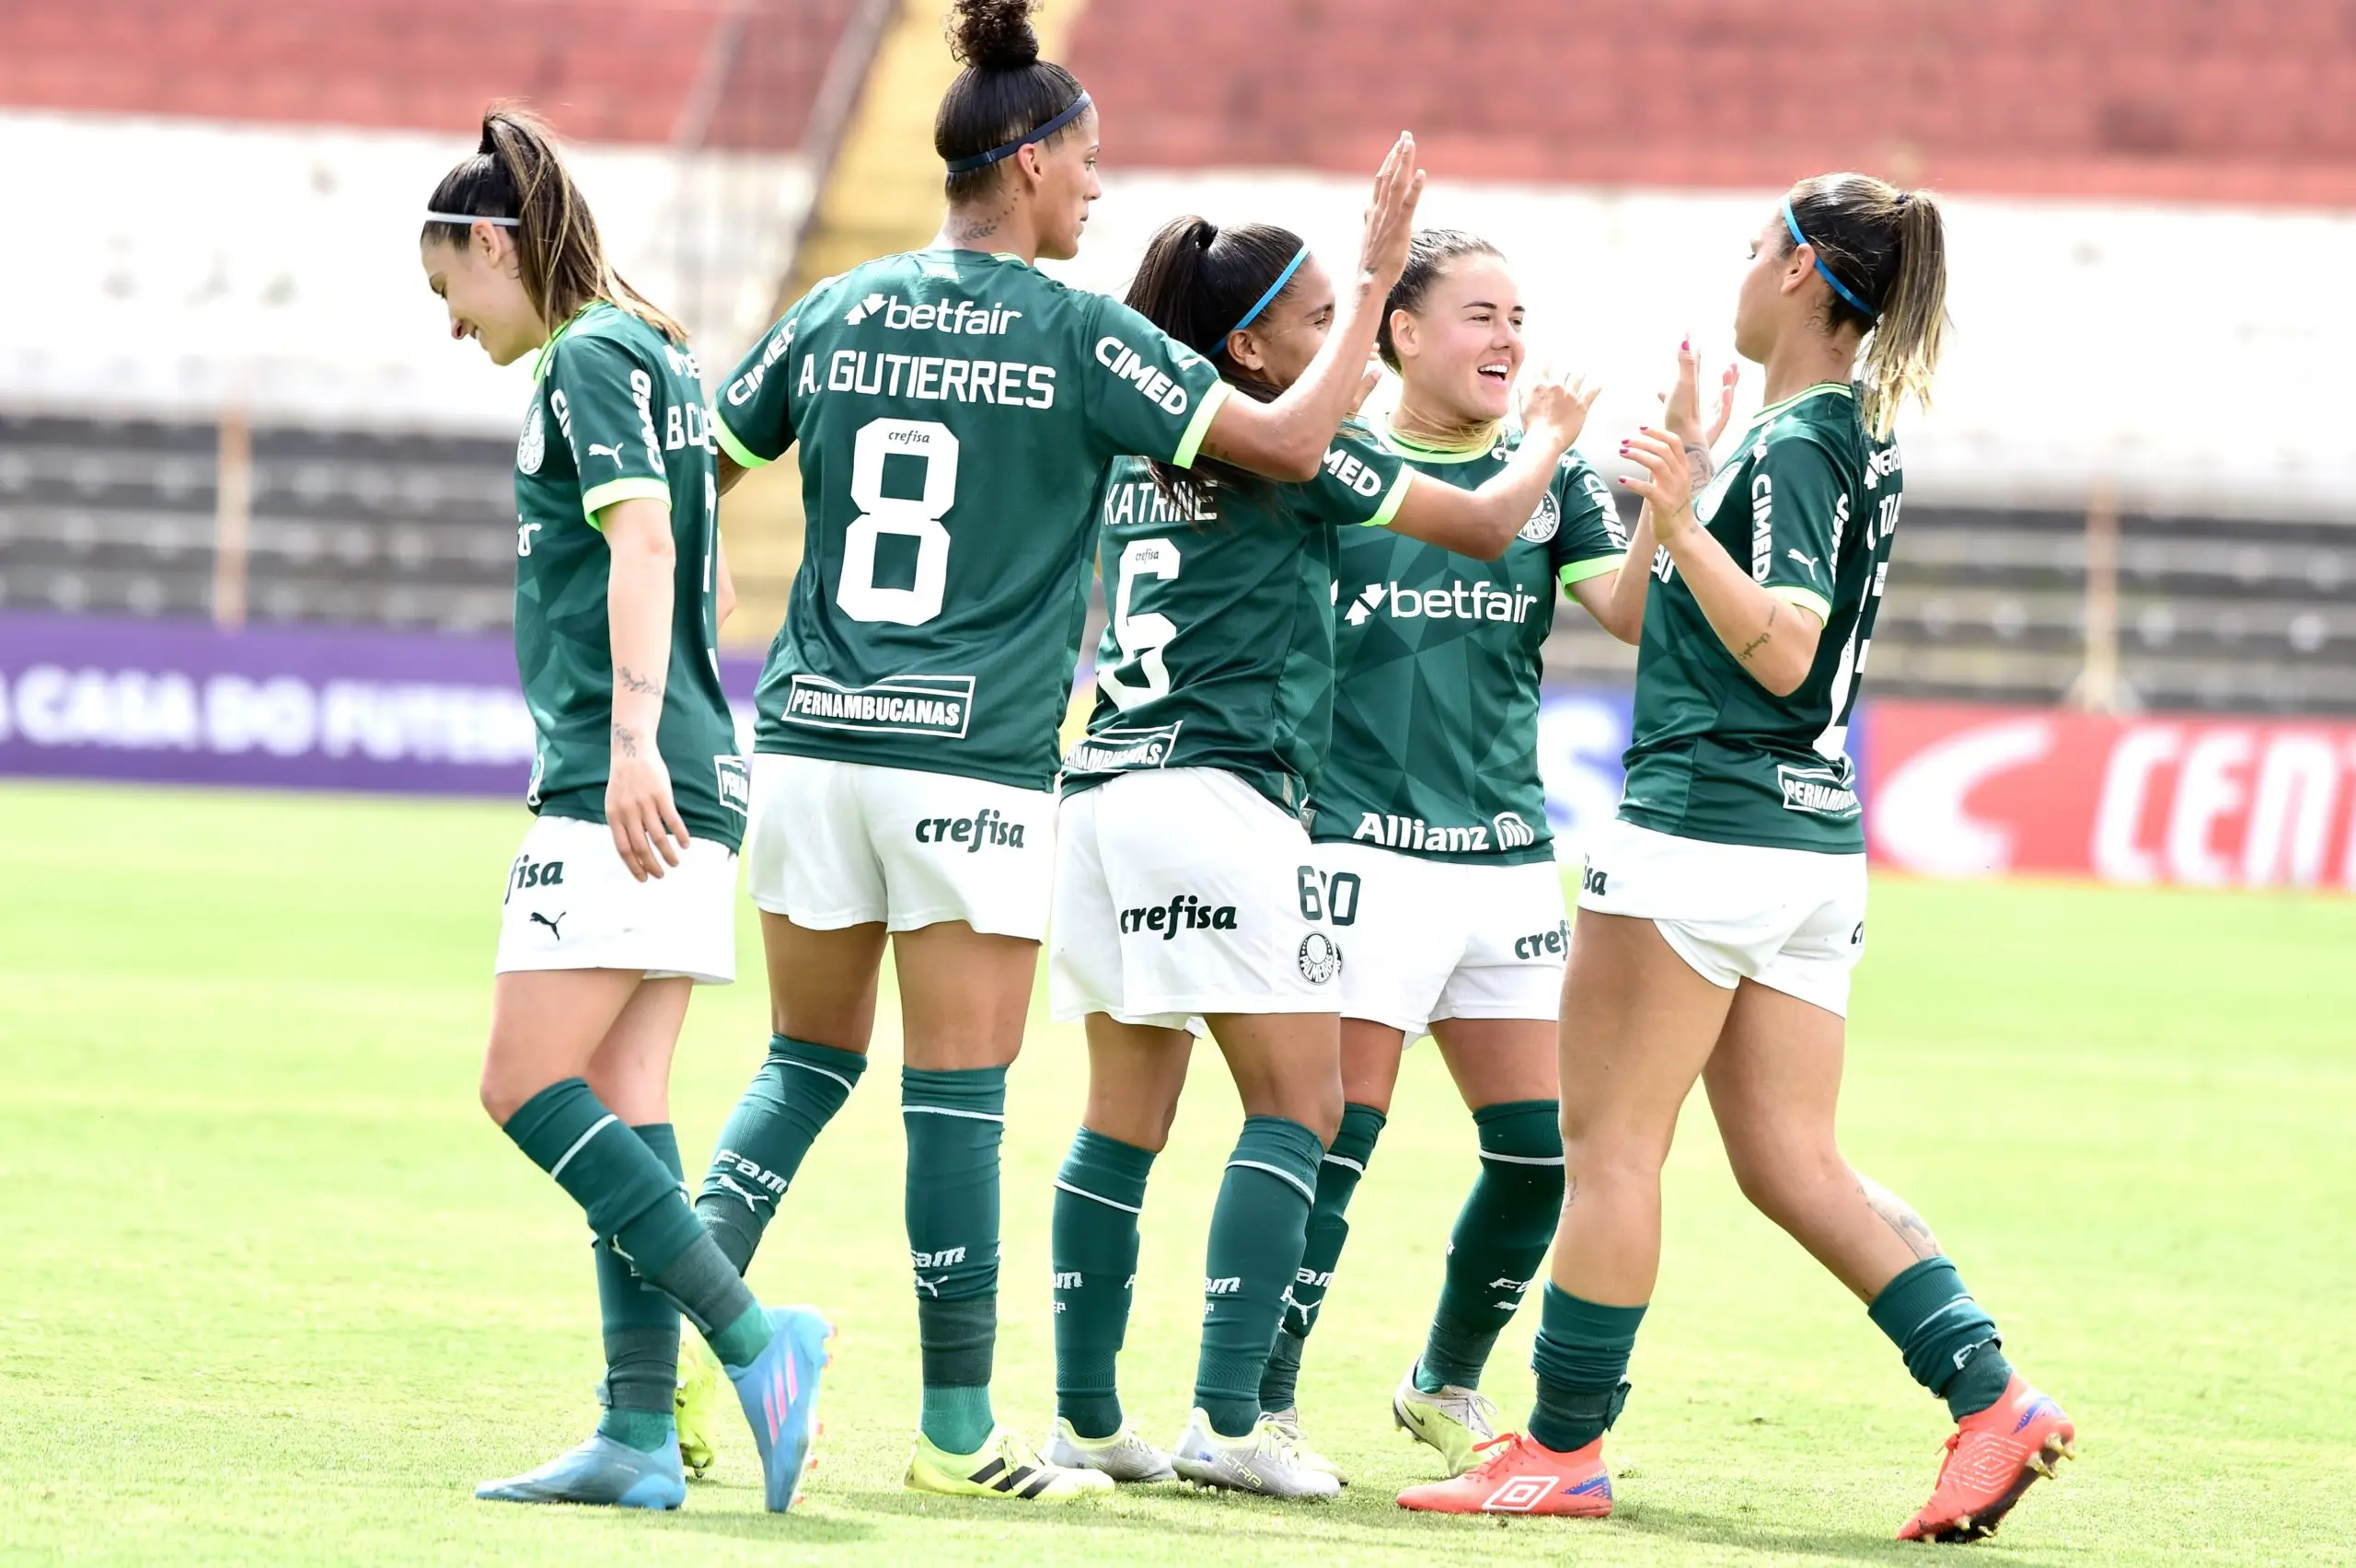 Assistir Ferroviária x Palmeiras AO VIVO – Campeonato Paulista Feminino